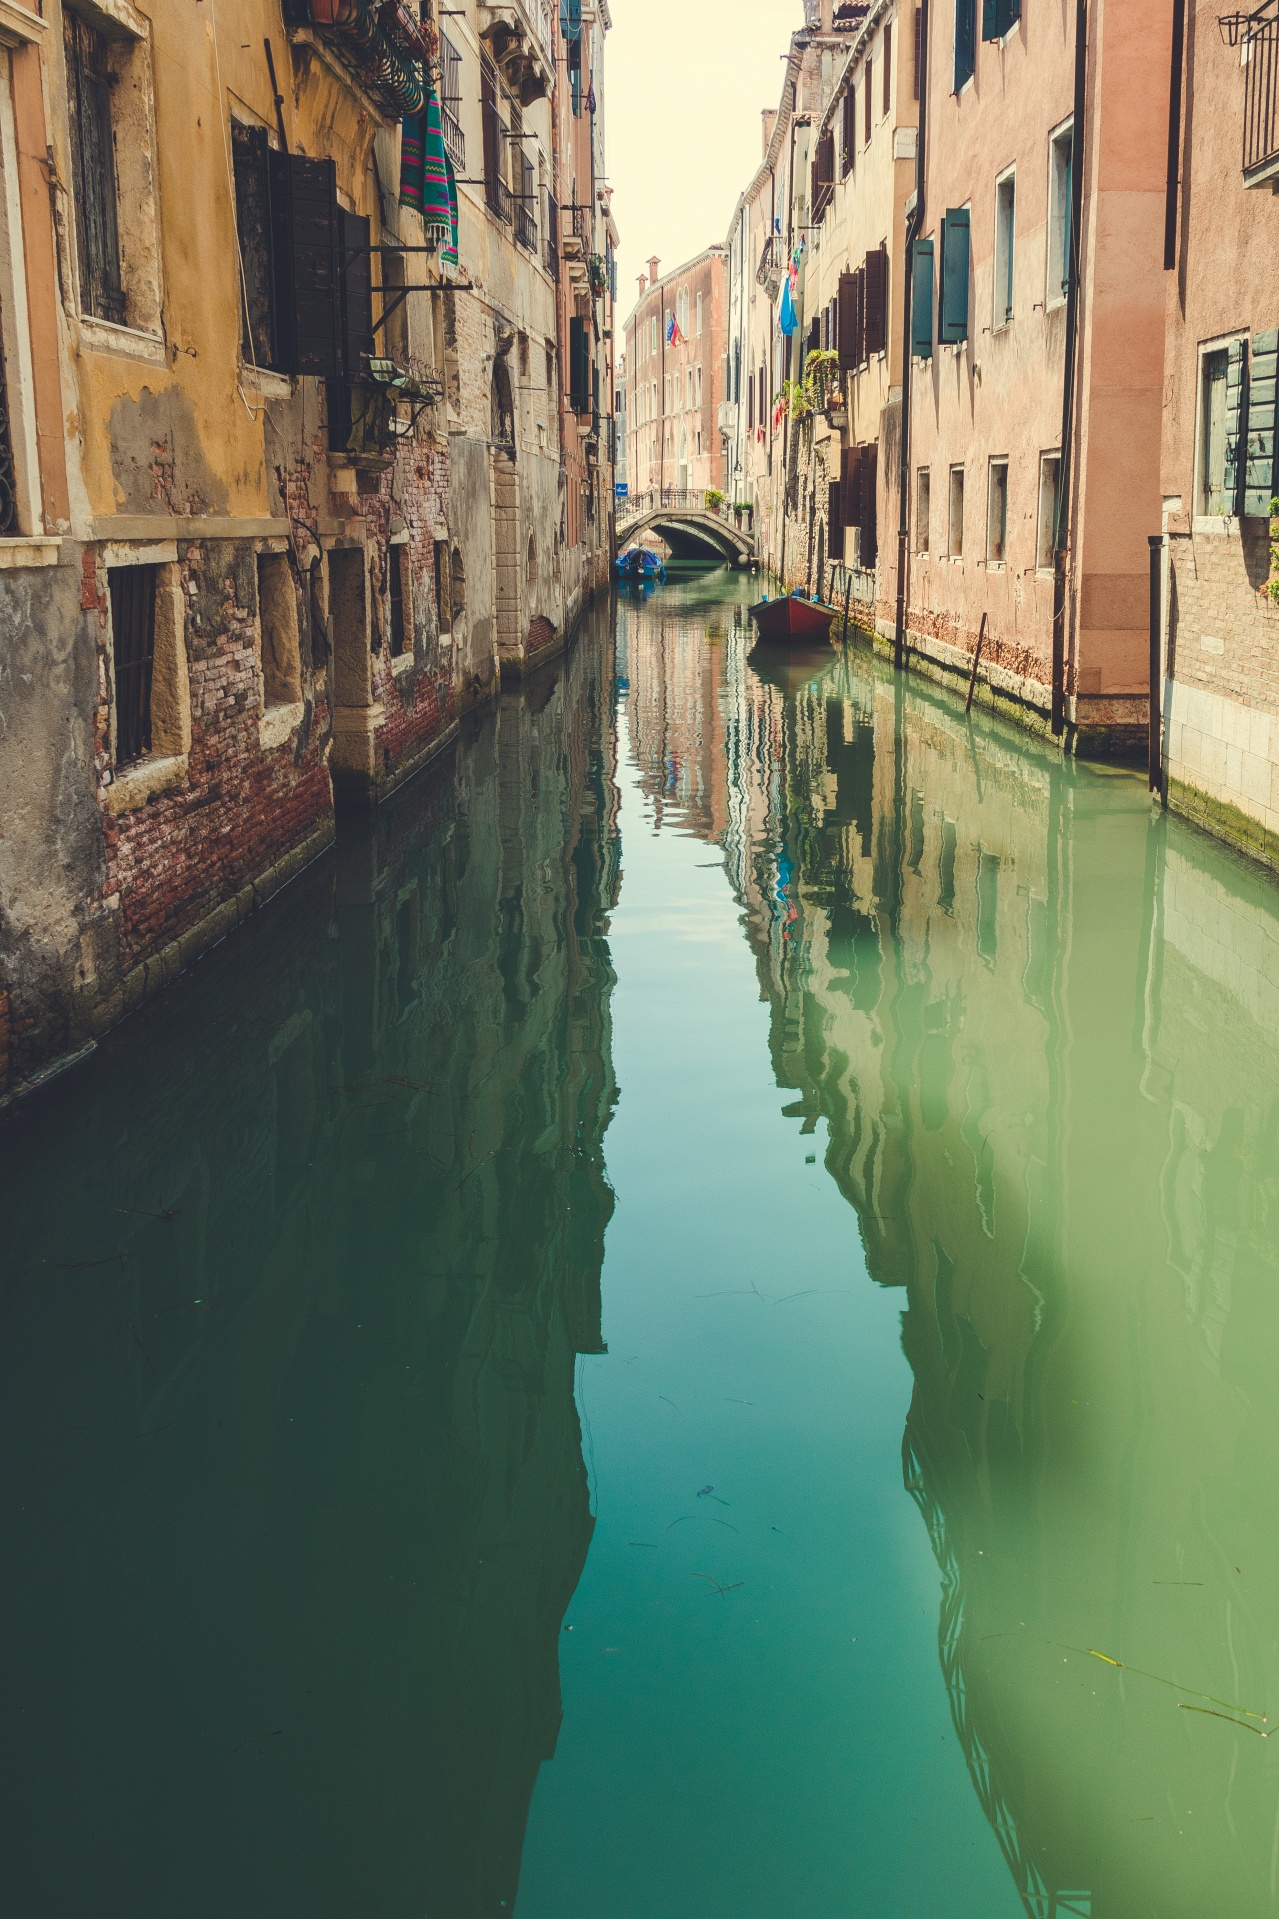 Narrow canal in Venice, Italy